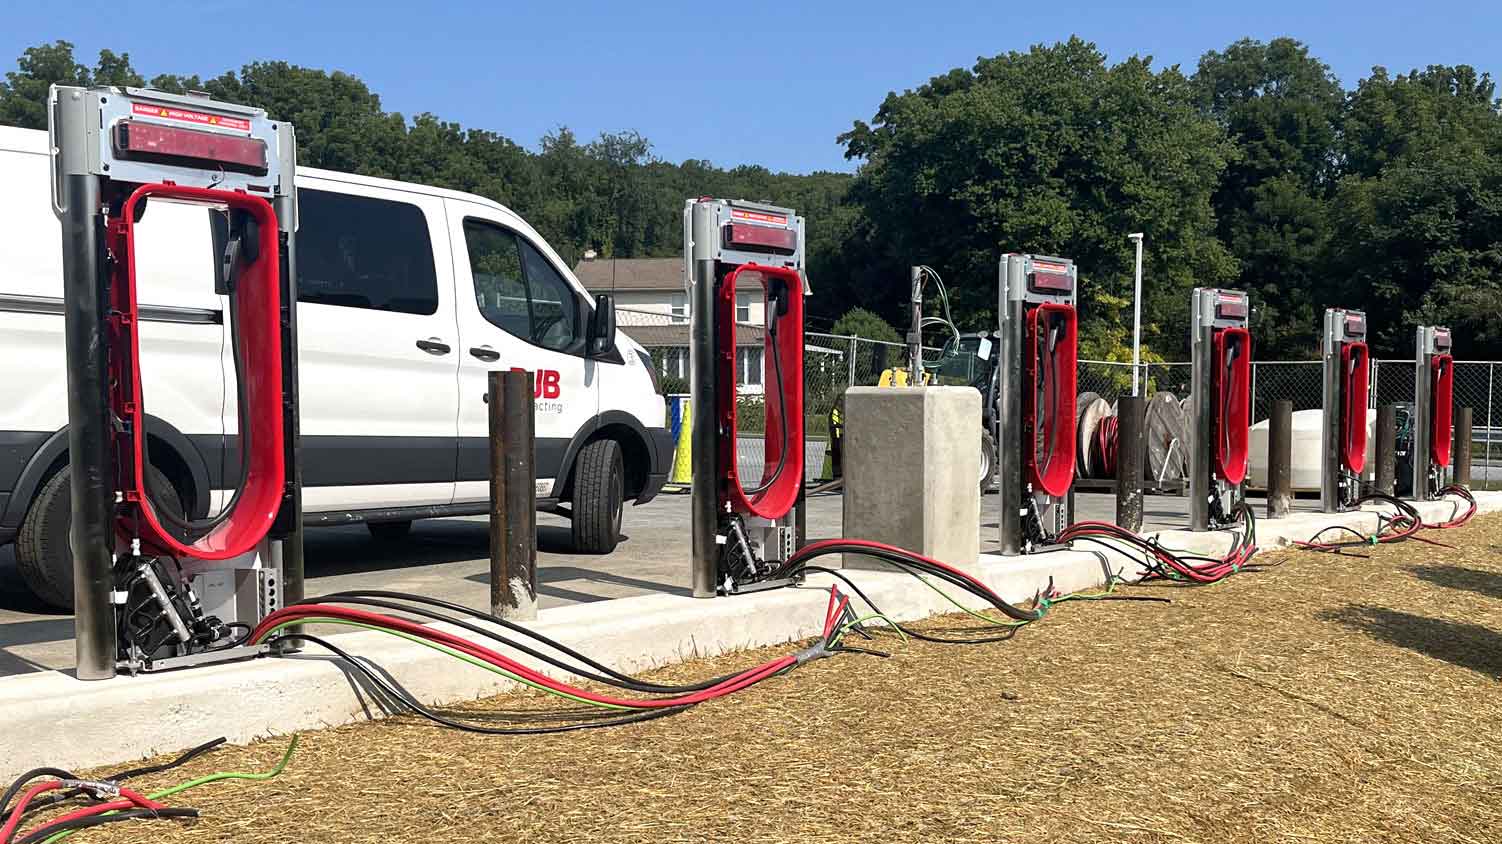 Tesla supercharging station